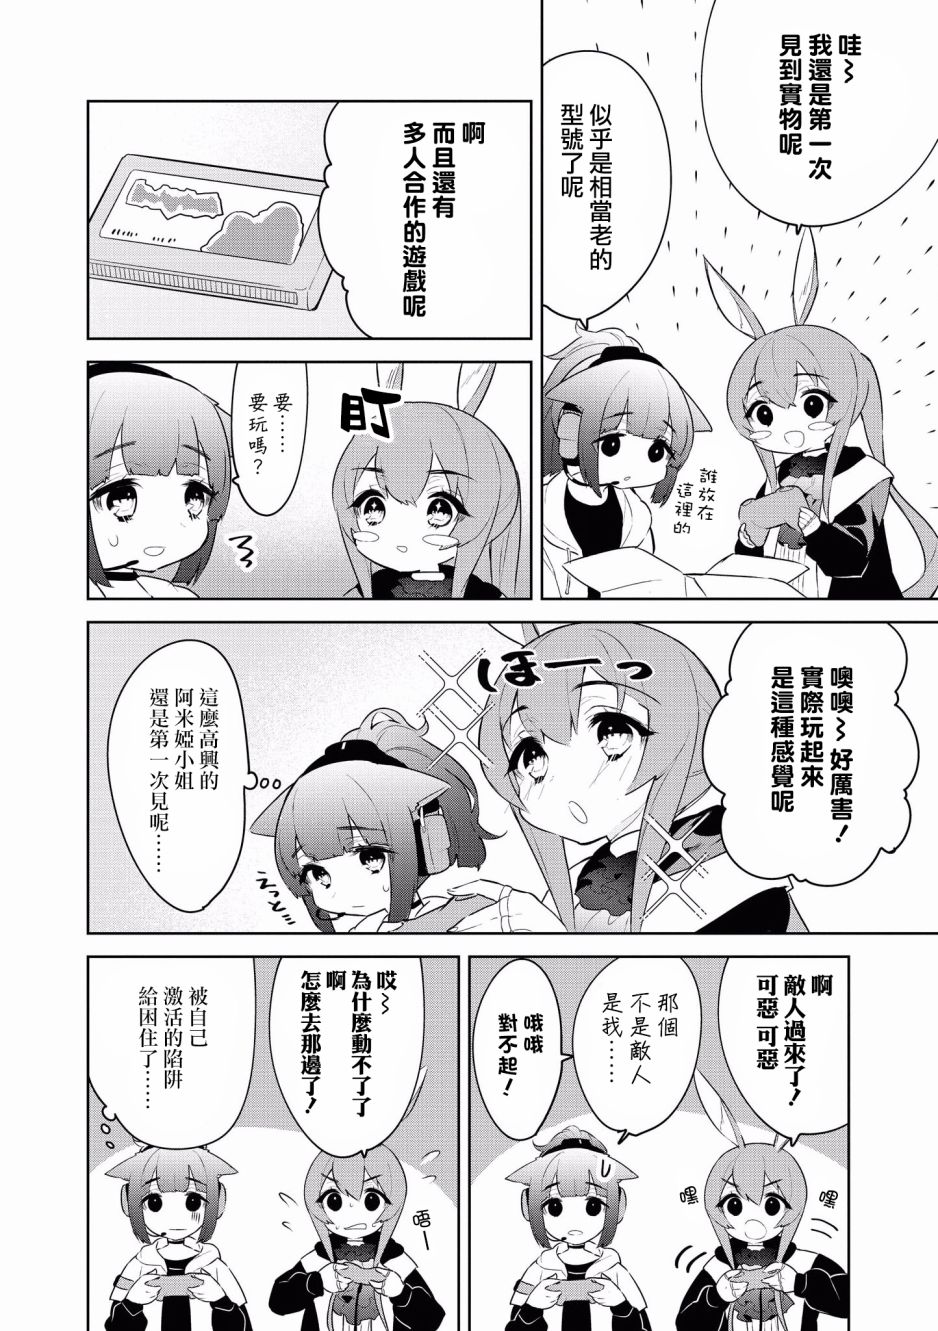 明日方舟漫画选集 - 10话 - 2